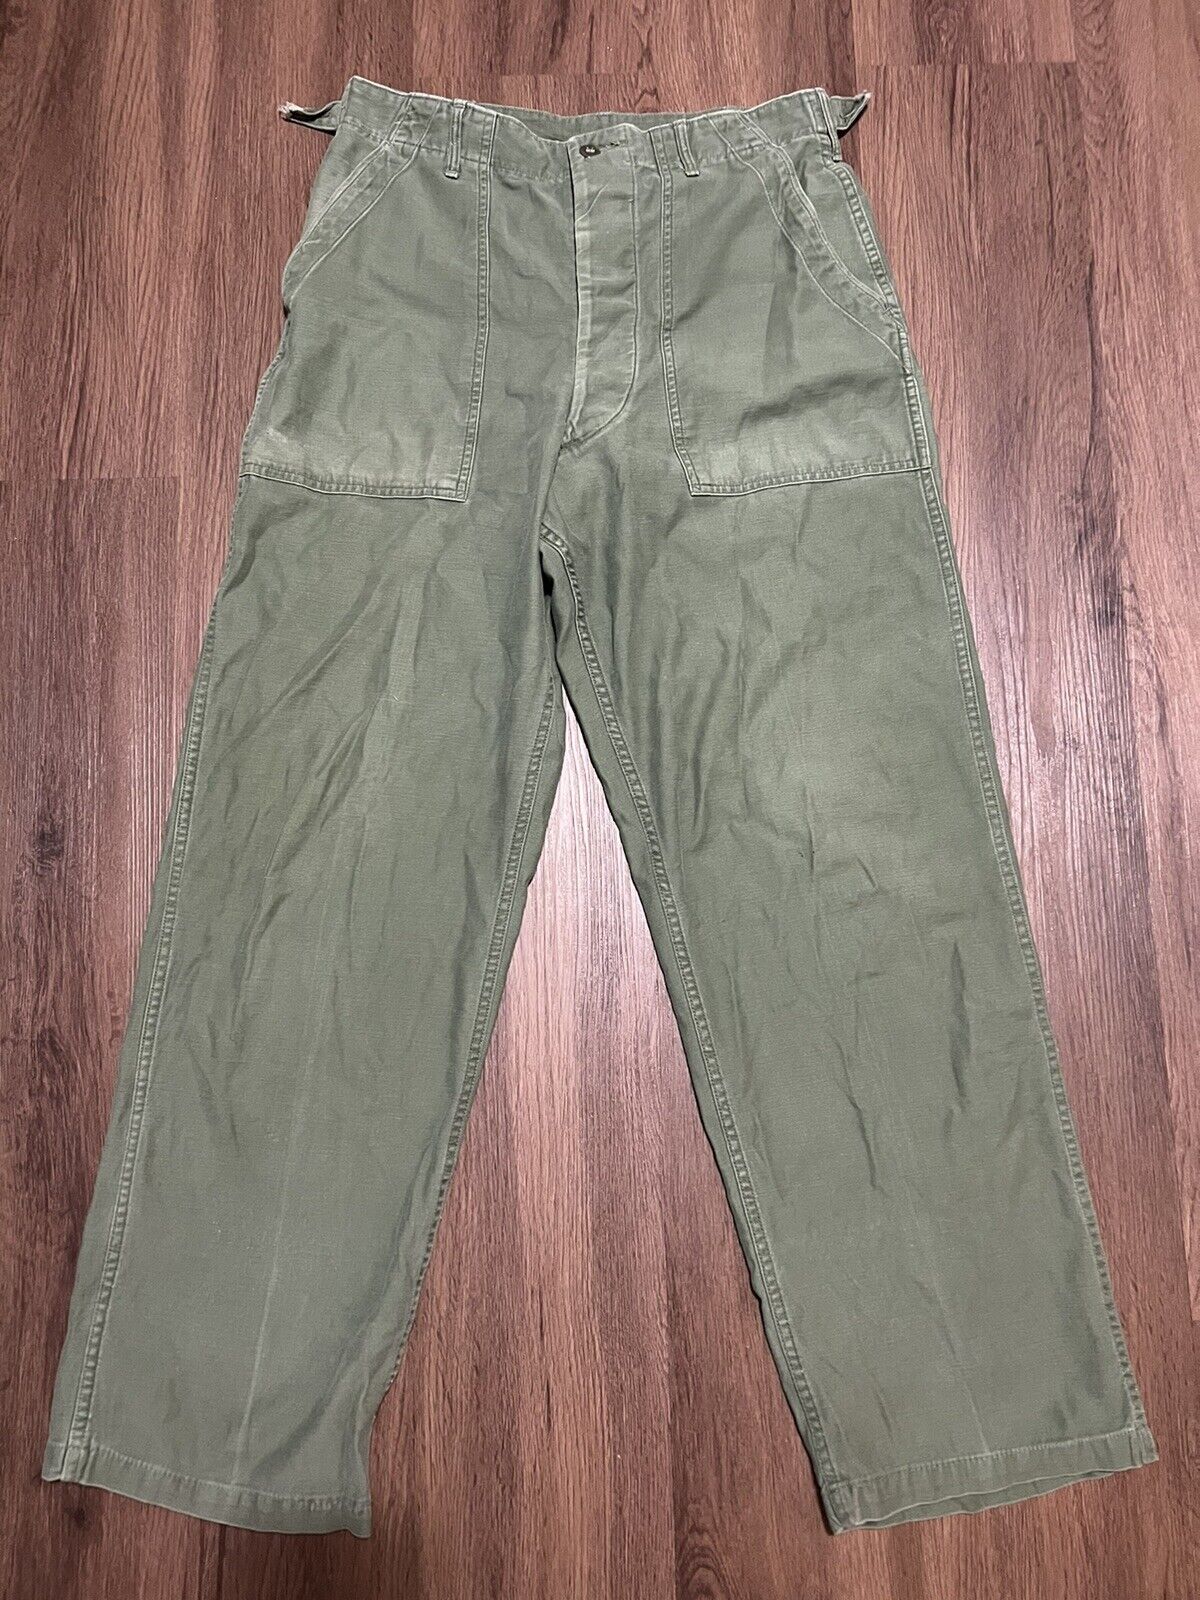 Vtg Us Military Trousers Type I Vietnam Og-107 Pants Green 1960s 31 X 30